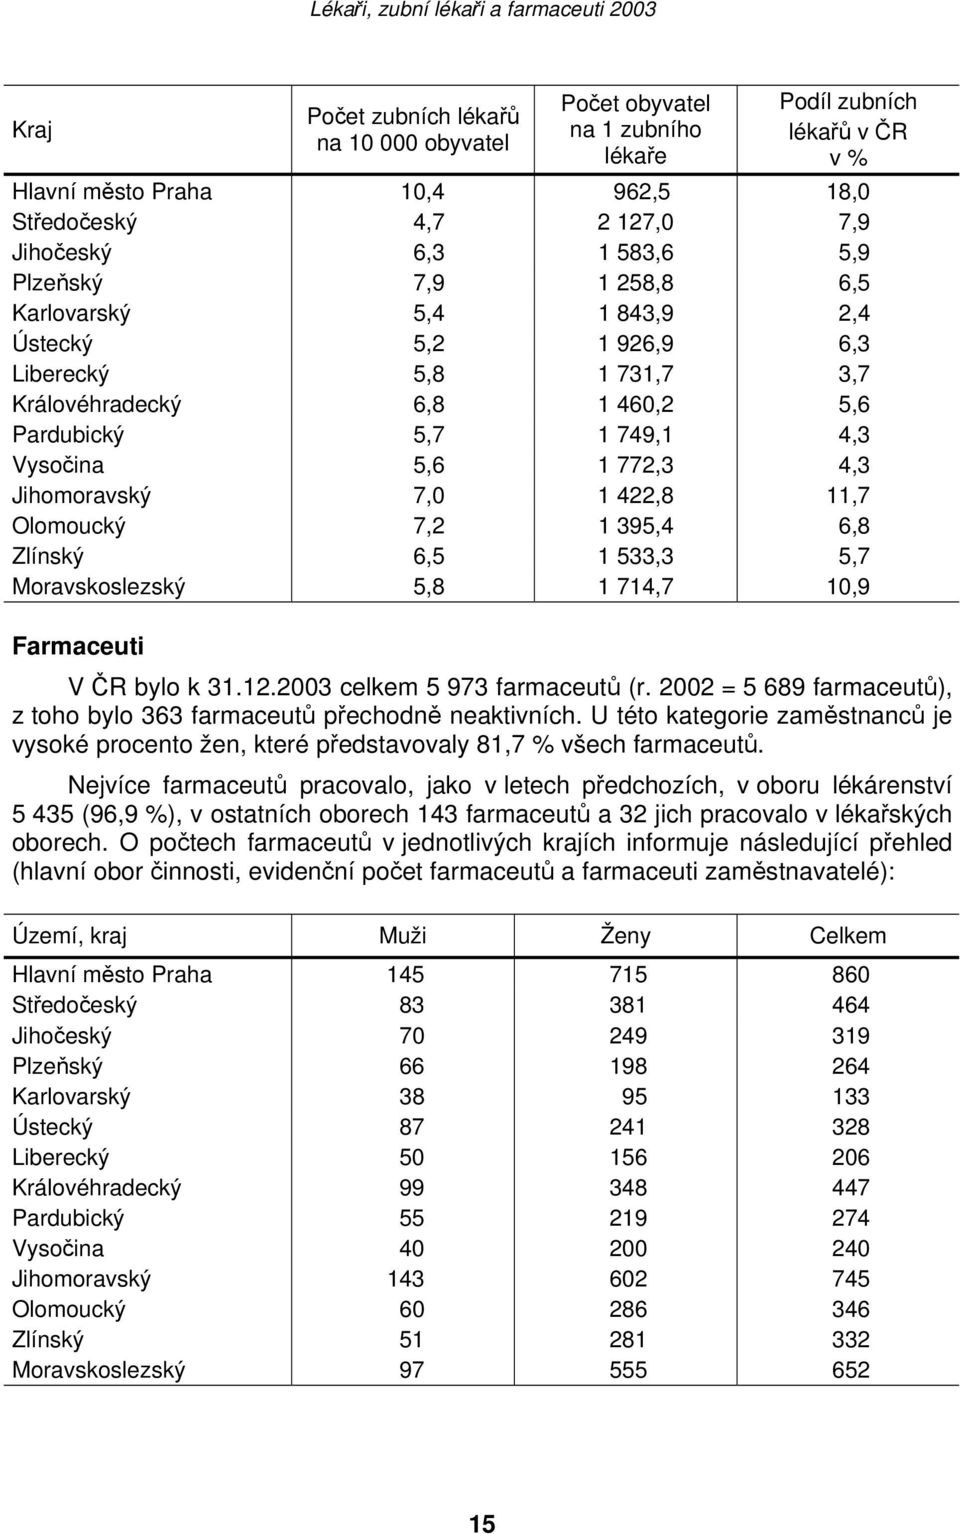 7,0 1 422,8 11,7 Olomoucký 7,2 1 395,4 6,8 Zlínský 6,5 1 533,3 5,7 Moravskoslezský 5,8 1 714,7 10,9 Farmaceuti V ČR bylo k 31.12.2003 celkem 5 973 farmaceutů (r.